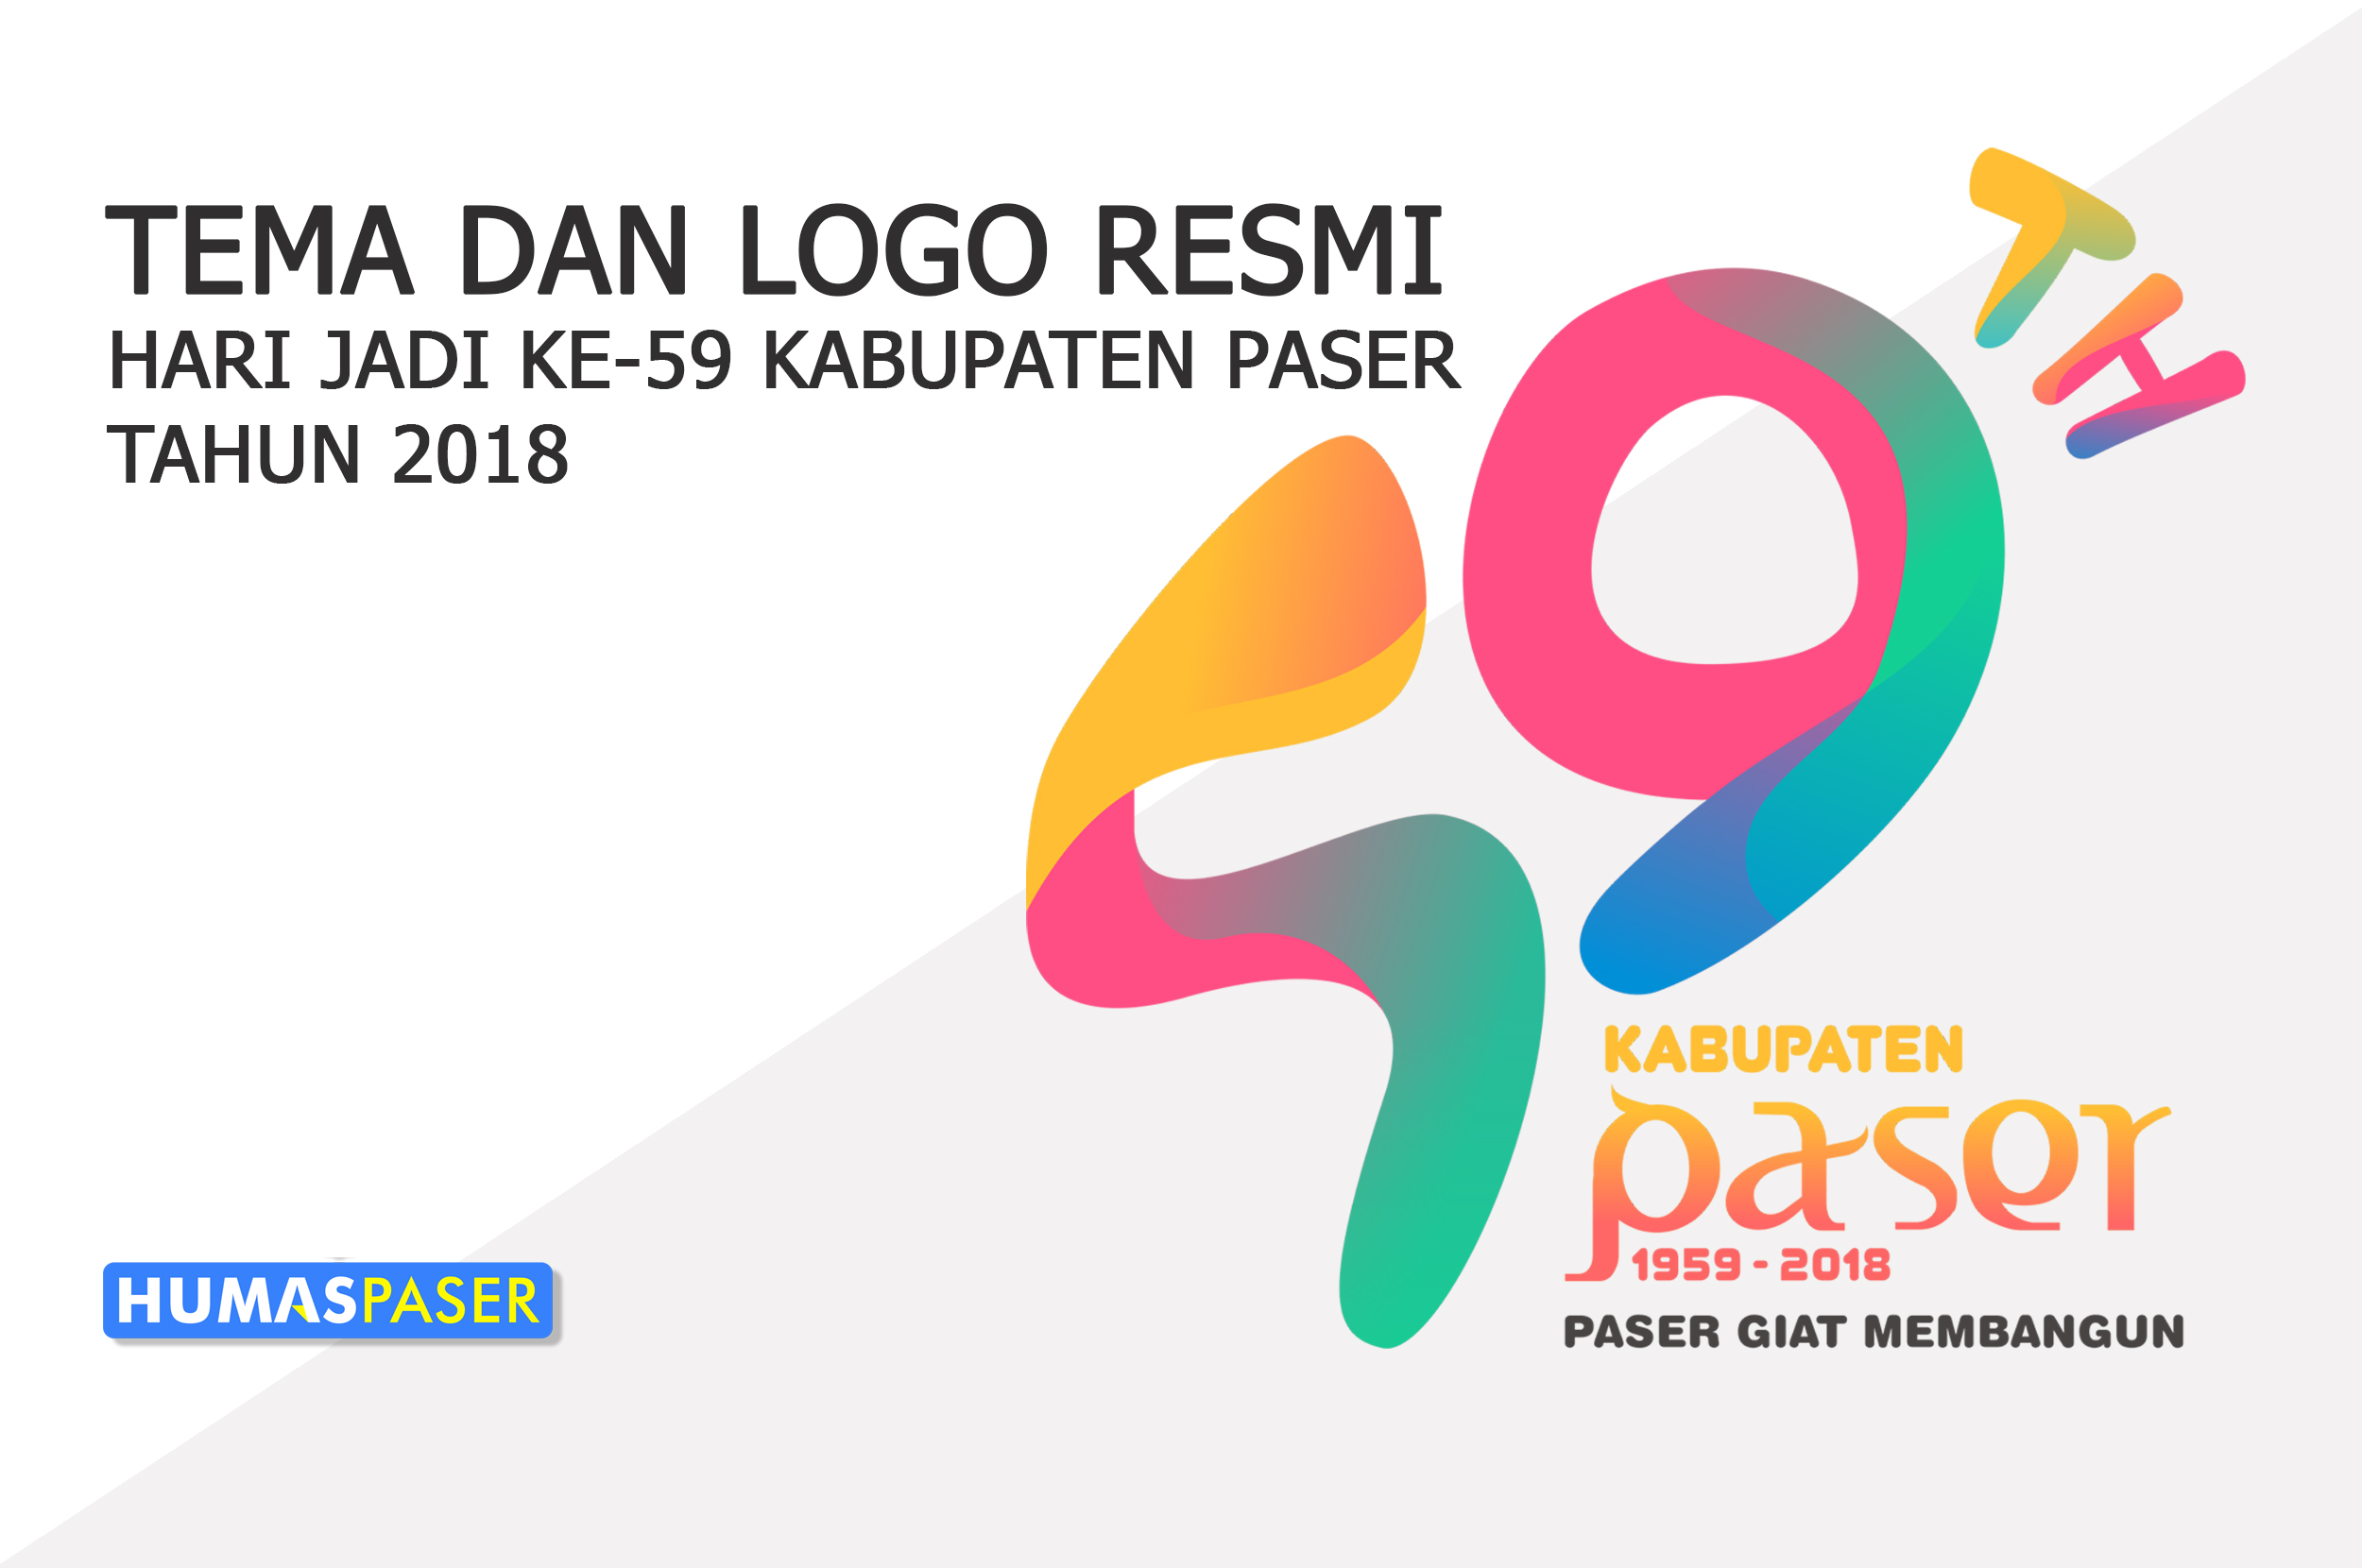 Pemkab Rilis Logo & Tema Hari Jadi Kabupaten Paser 59 Tahun